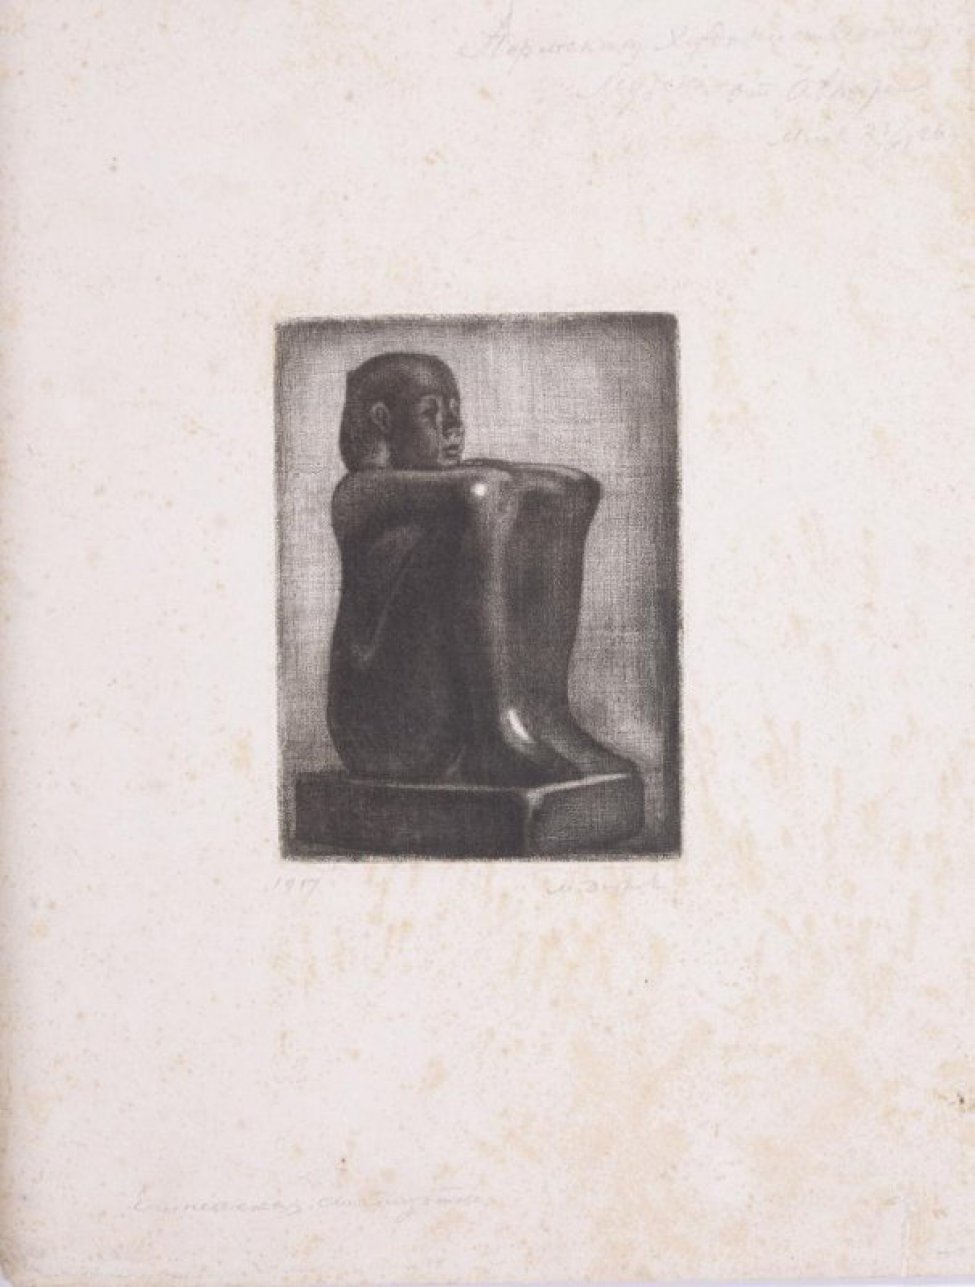 Статуэтка изображает женщину, сидящую на пьедестале с согнутыми в коленях ногами. Руки лежат на коленях.